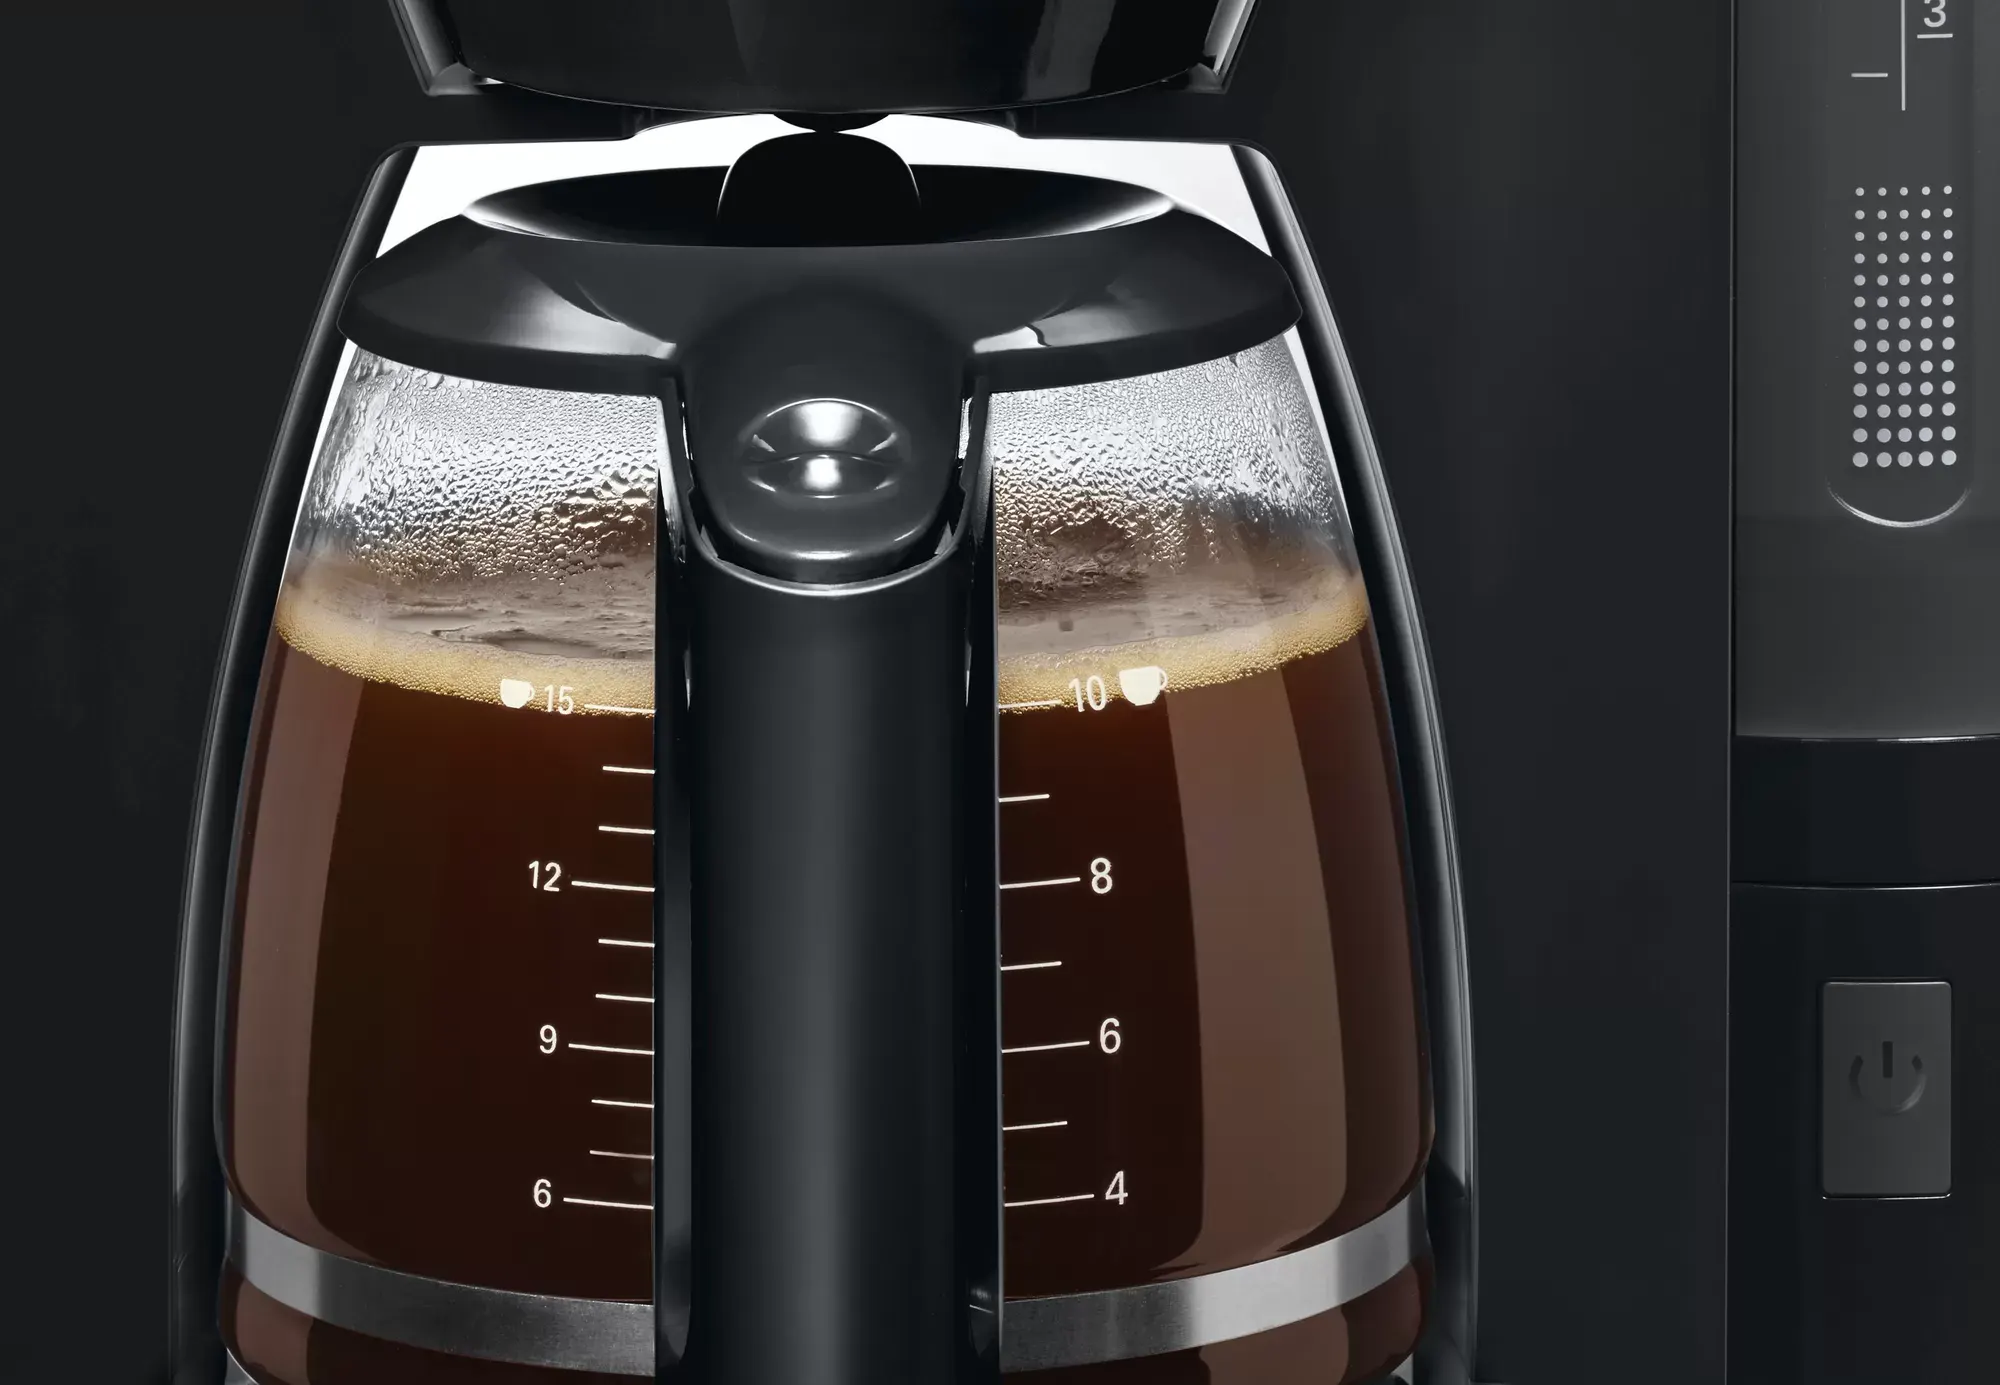 ماكينة تحضير قهوة امريكان بوش كومفورت لاين، 1200 وات ،أسود ،TKA6A043